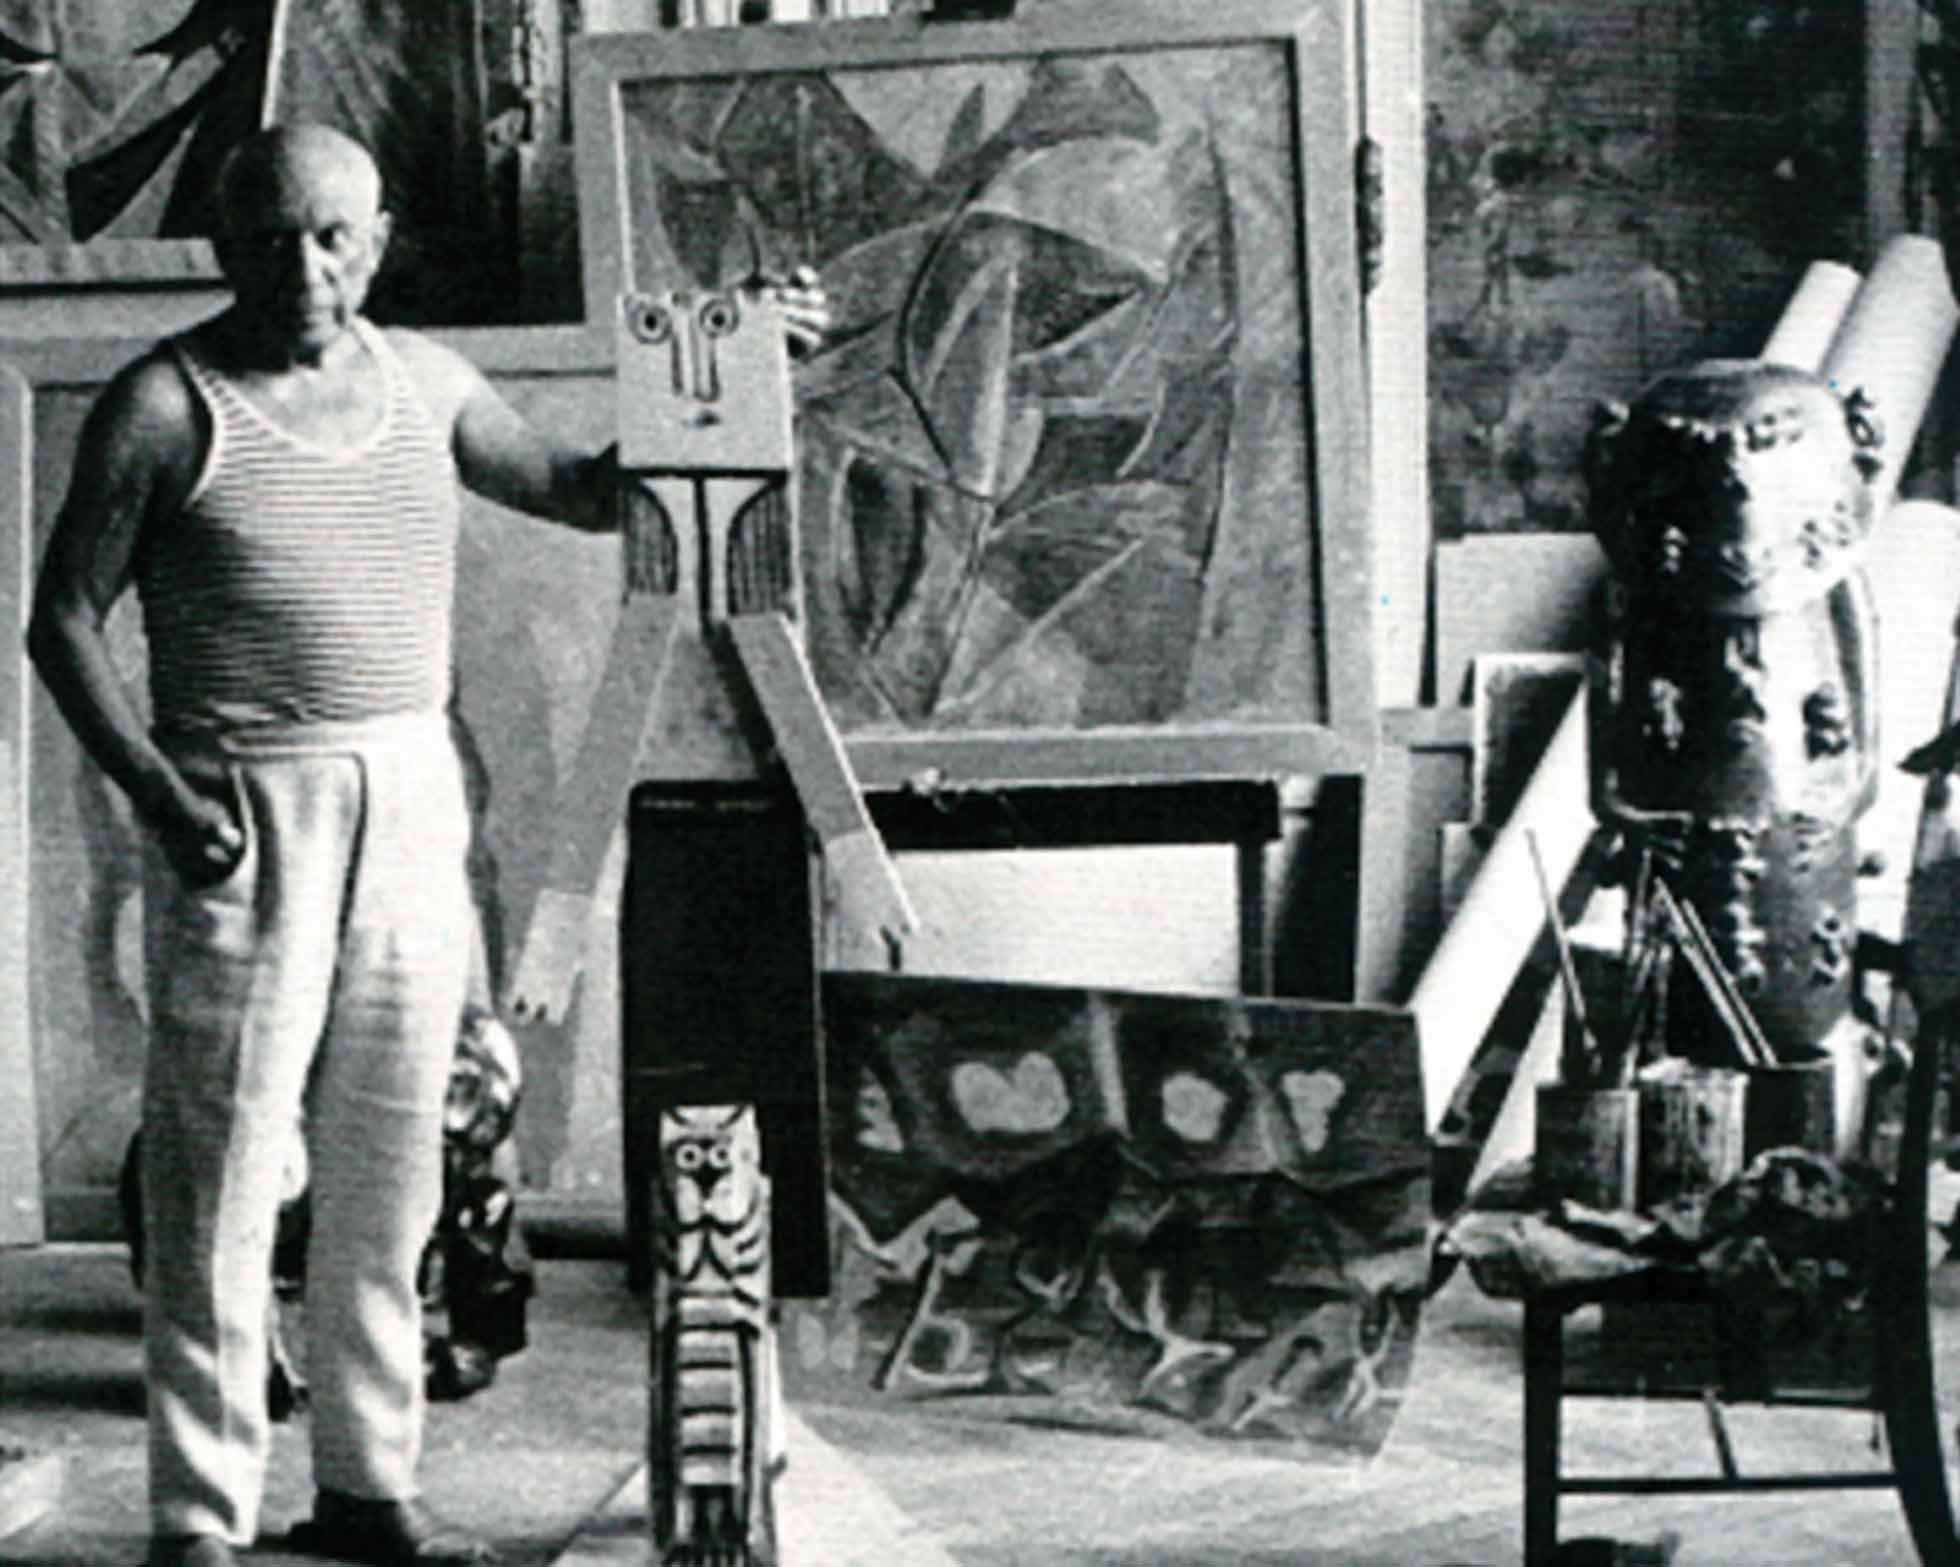 Le célèbre peintre Pablo Picasso détenait un moulage de A’a, dont il ne se séparait jamais. L’artiste avait compris toute la valeur esthétique de cette sculpture, surnommée la Joconde de l’Océanie.